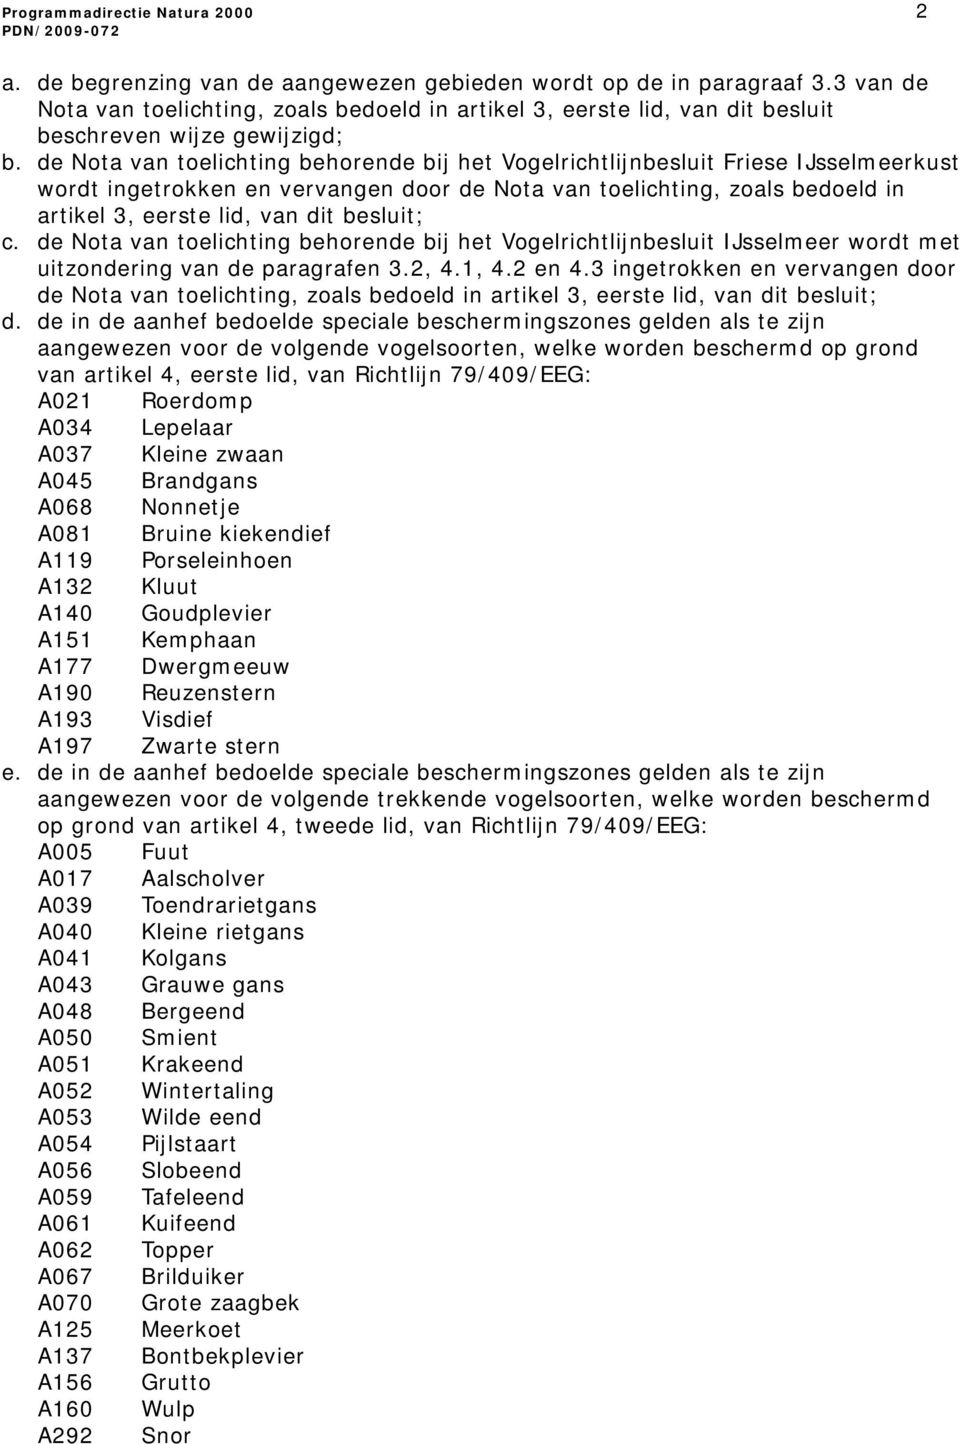 de Nota van toelichting behorende bij het Vogelrichtlijnbesluit Friese IJsselmeerkust wordt ingetrokken en vervangen door de Nota van toelichting, zoals bedoeld in artikel 3, eerste lid, van dit